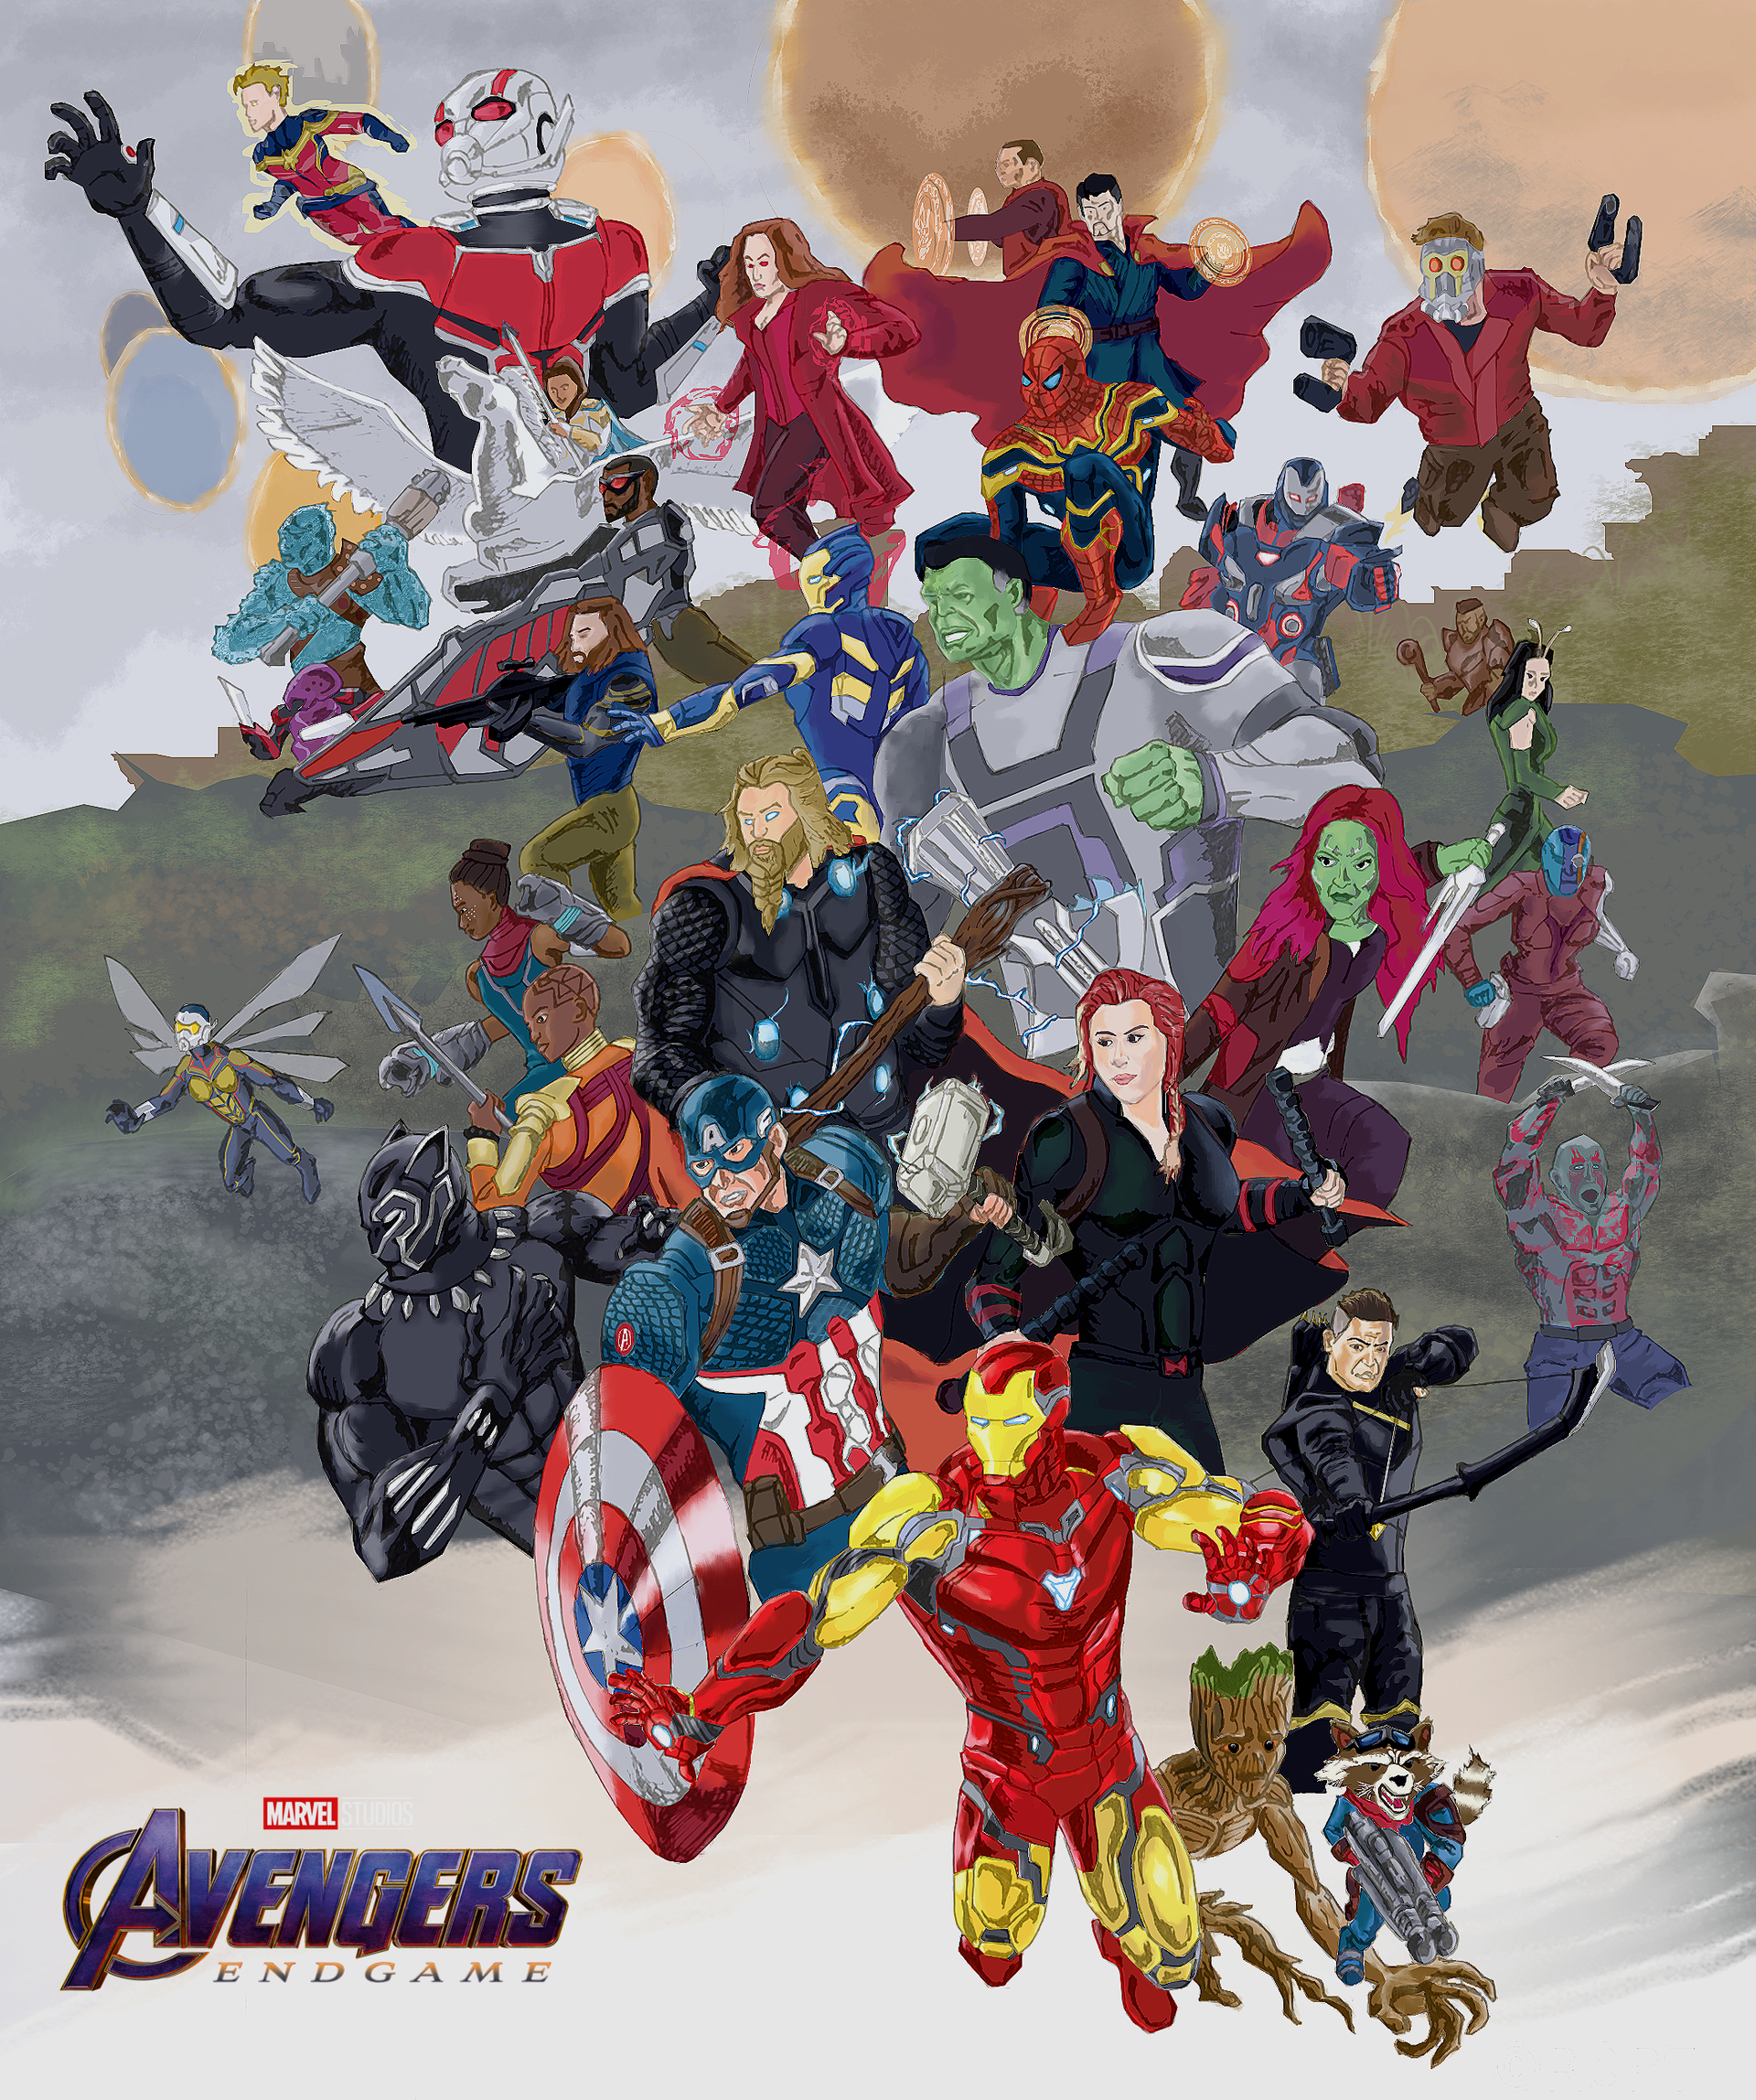 Avengers Assemble (official) by RSPraneet7 on DeviantArt